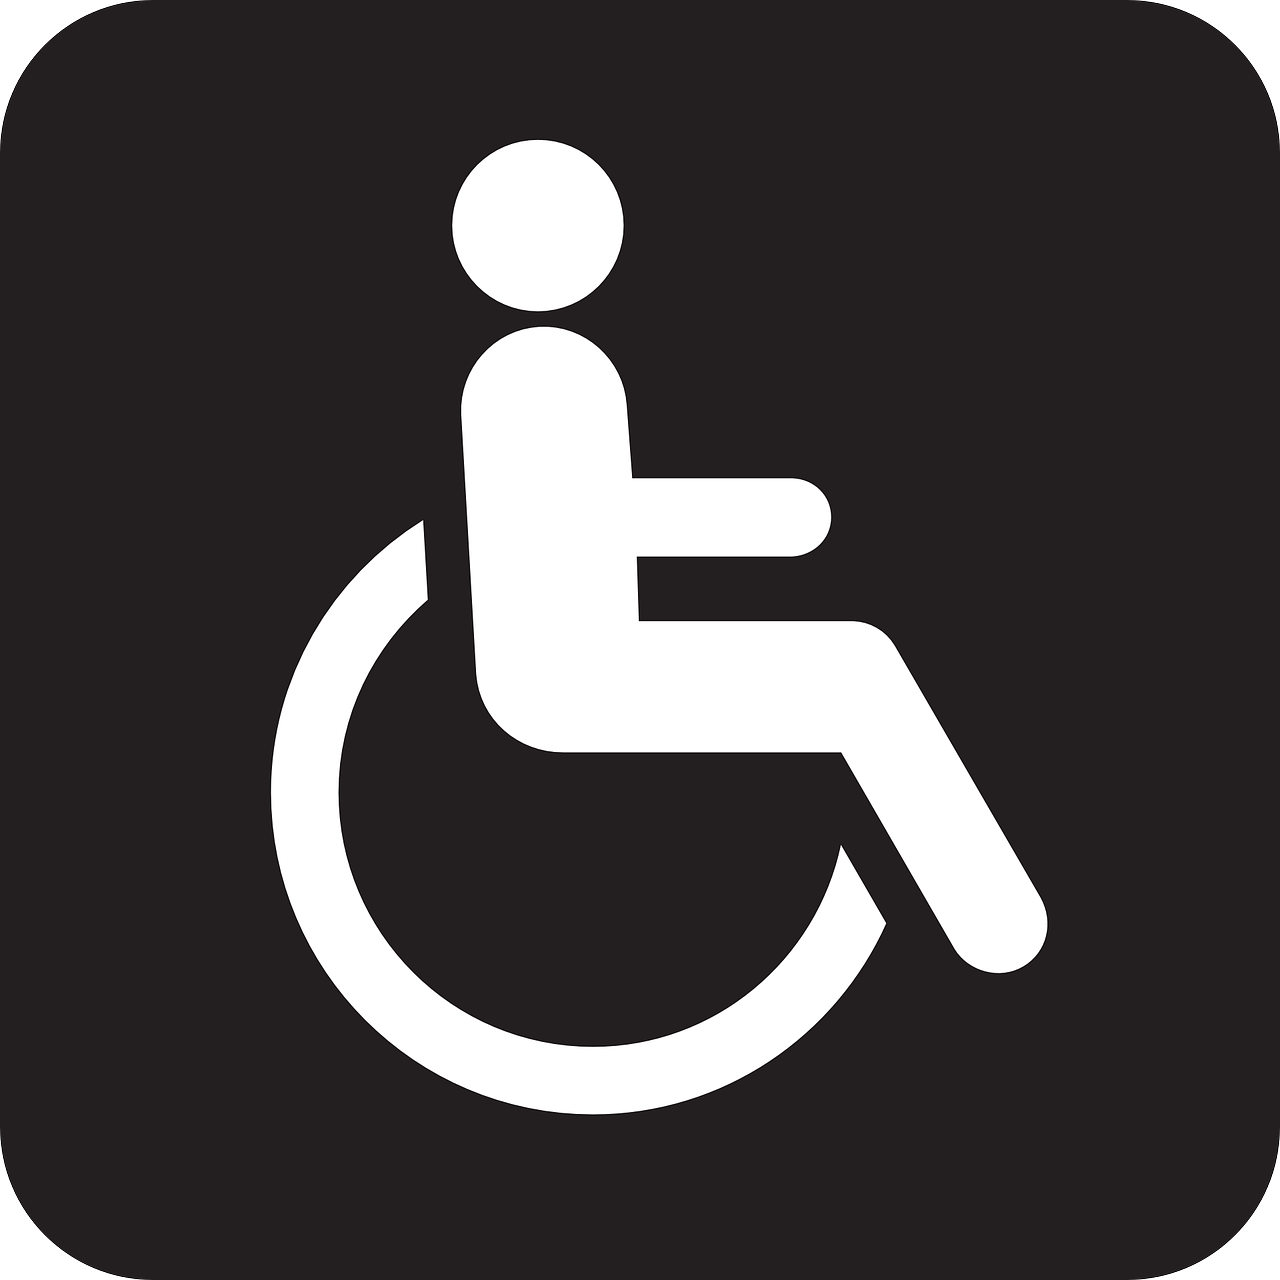 Walnoot De Kinderdagcentrum Gemiva - SVG Groep beoordelingen instelling gehandicaptenzorg verstandelijk gehandicapten